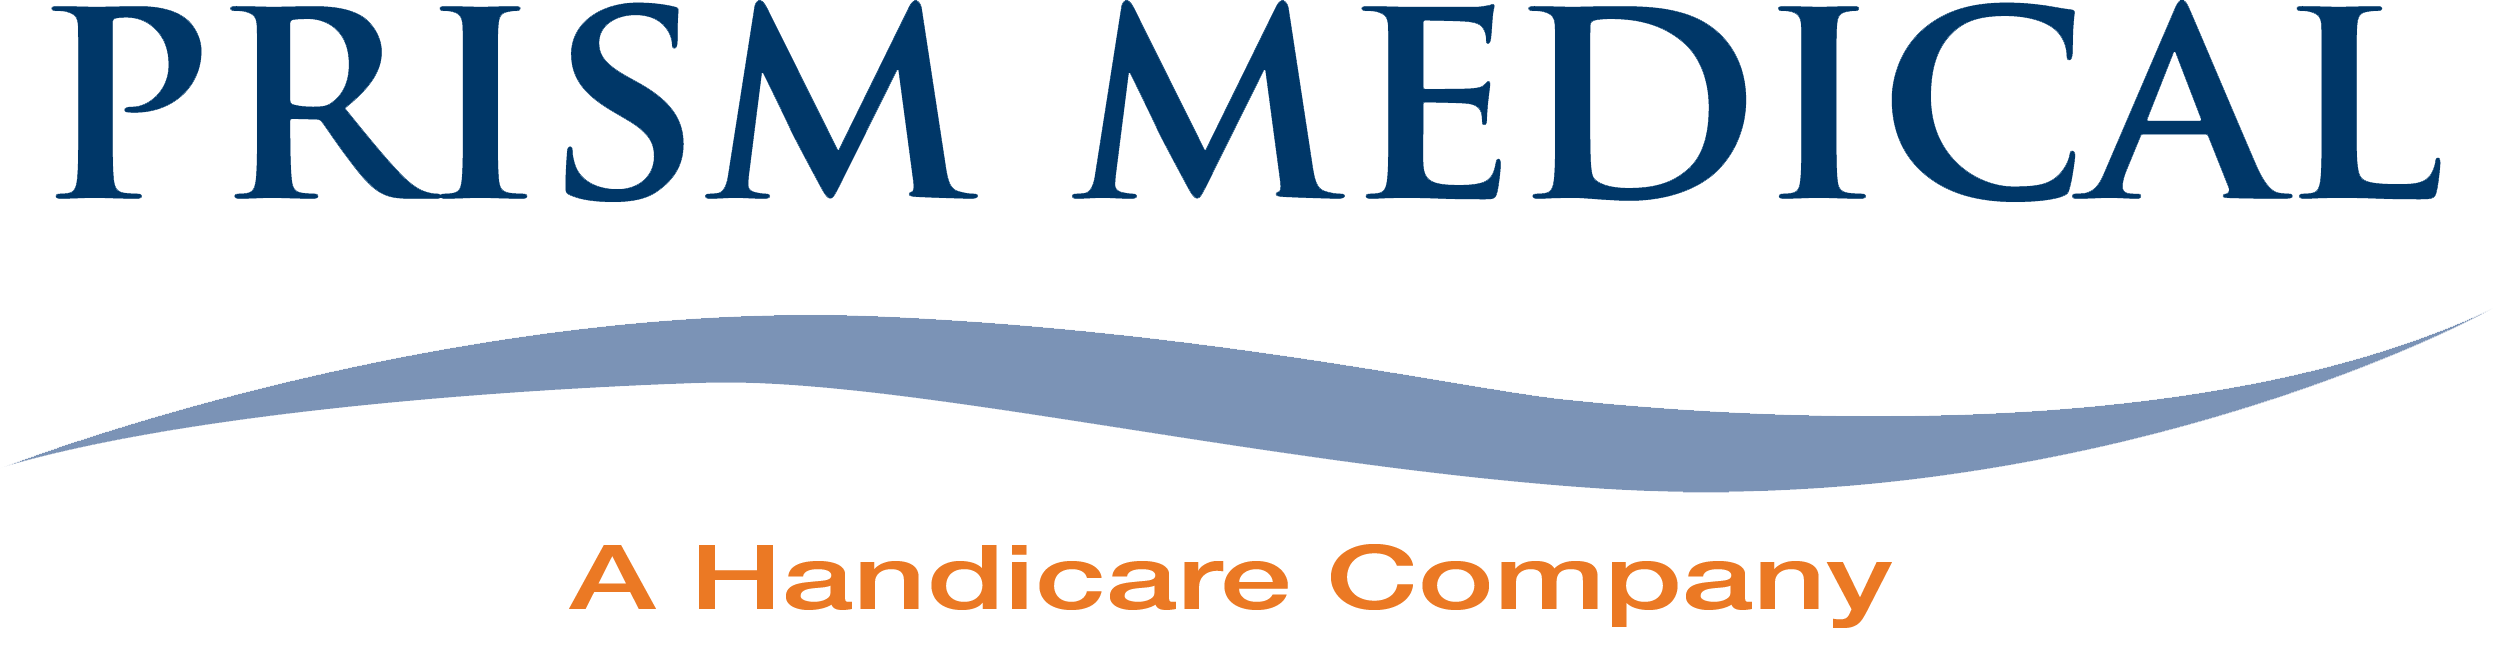 Prism Medical, a Handicare Company Logo